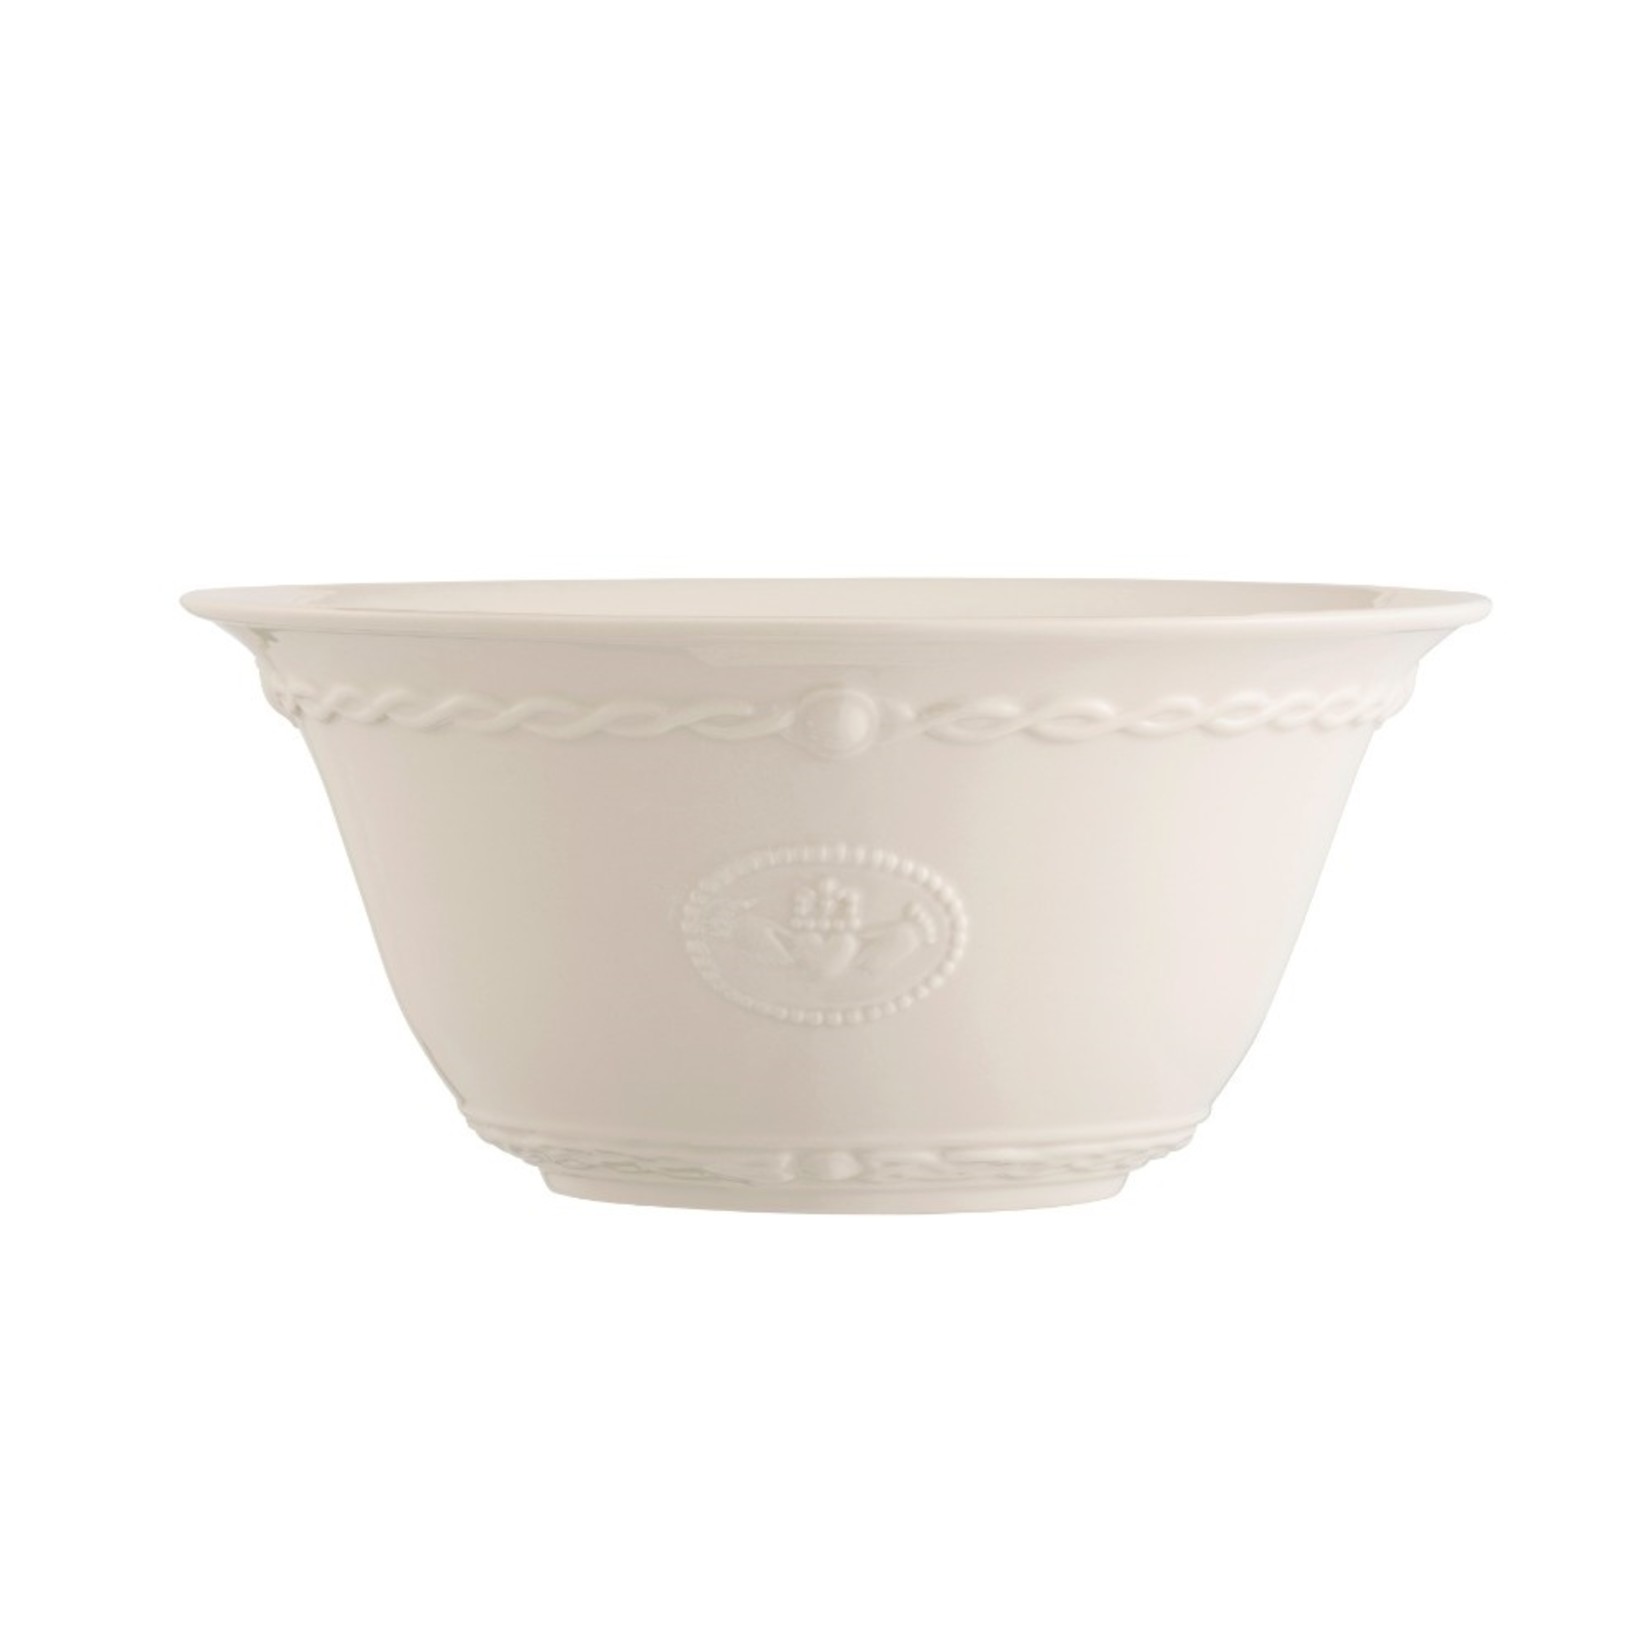 https://cdn.shoplightspeed.com/shops/612906/files/27067021/1652x1652x1/belleek-classic-claddagh-serving-bowl-by-belleek.jpg